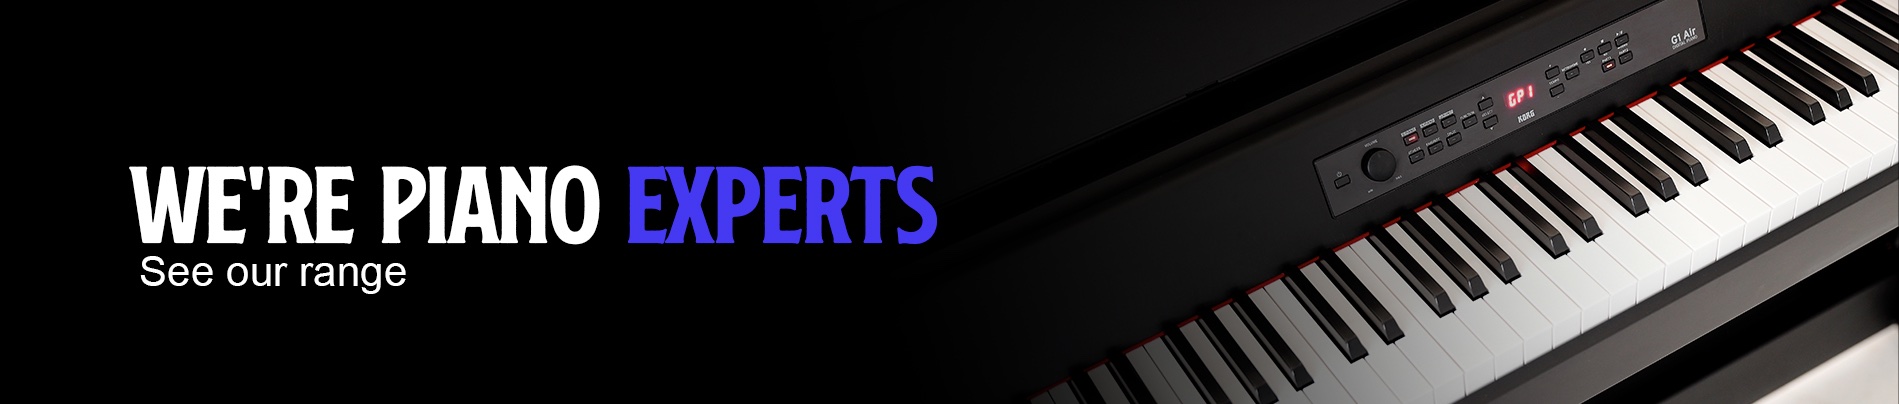 piano_experts.jpg